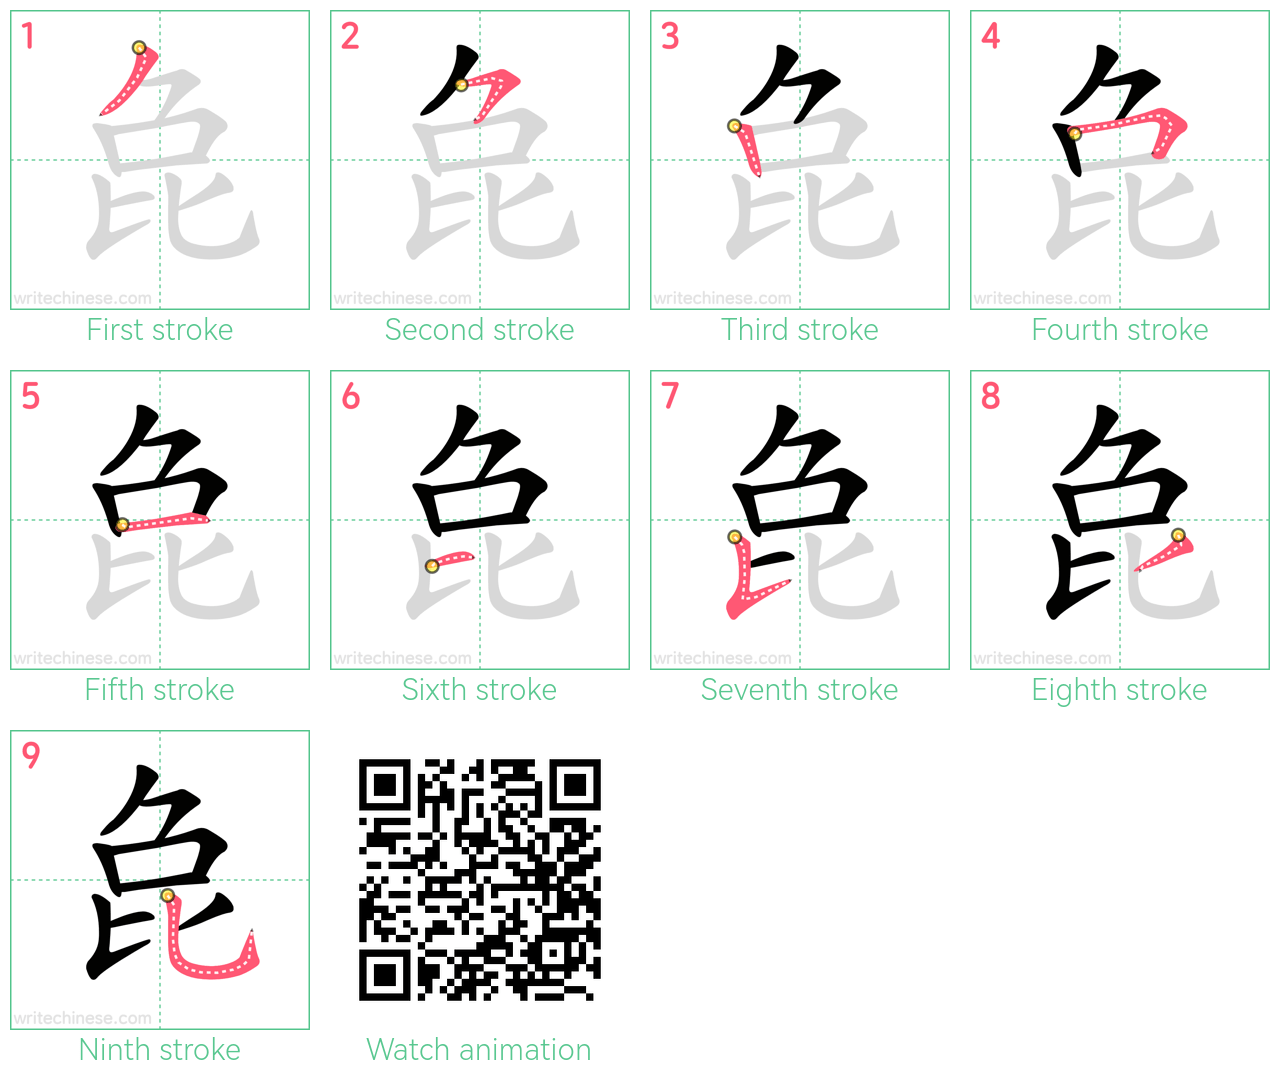 㲋 step-by-step stroke order diagrams